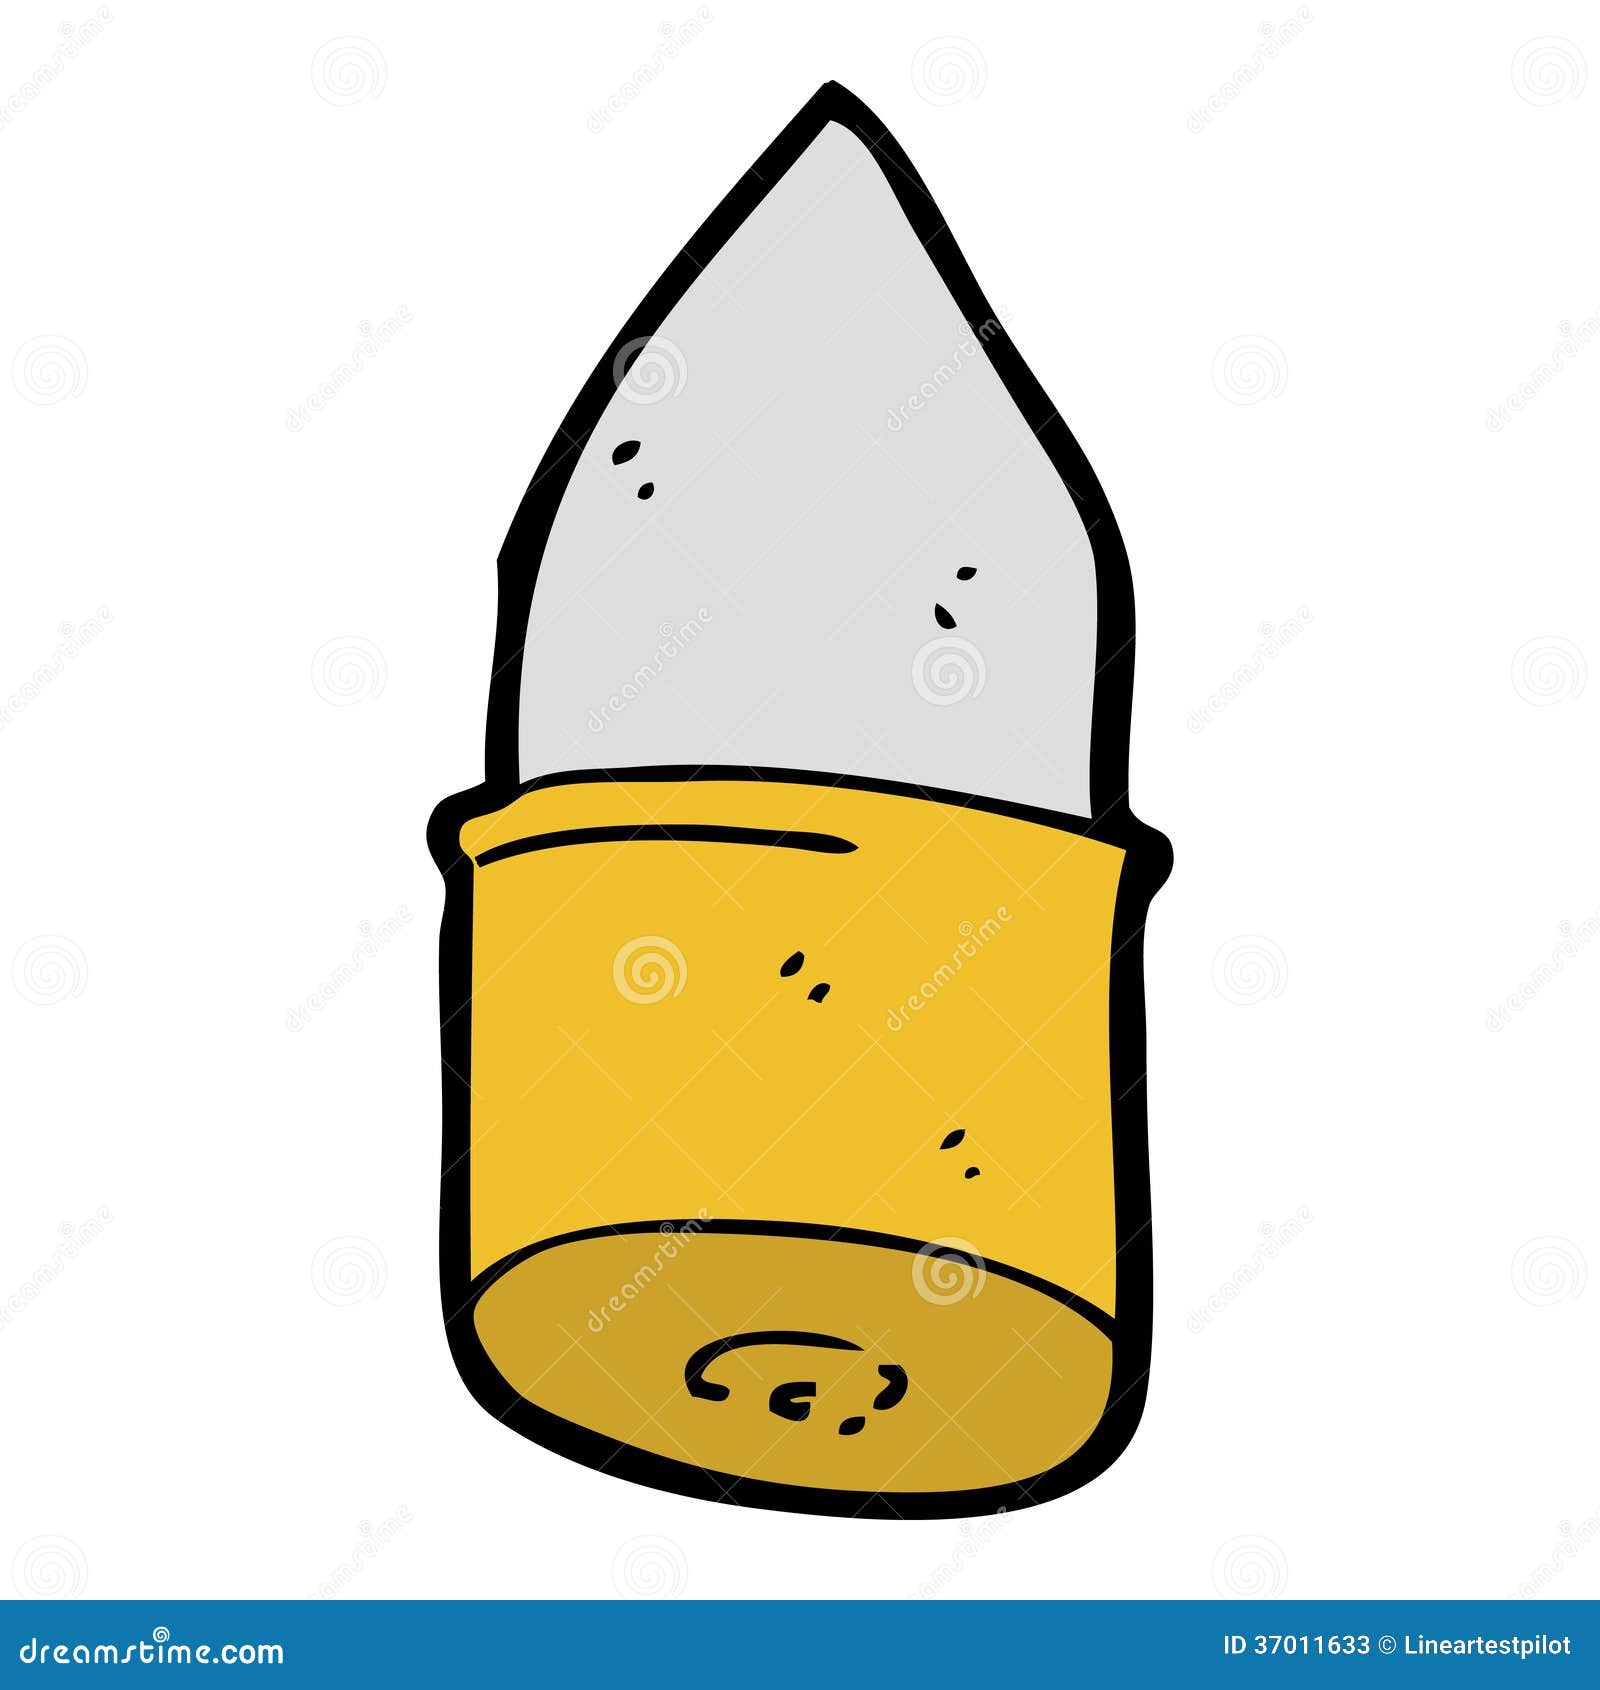 Cartoon bullet stock vector. Illustration of bullet, clip - 37011633